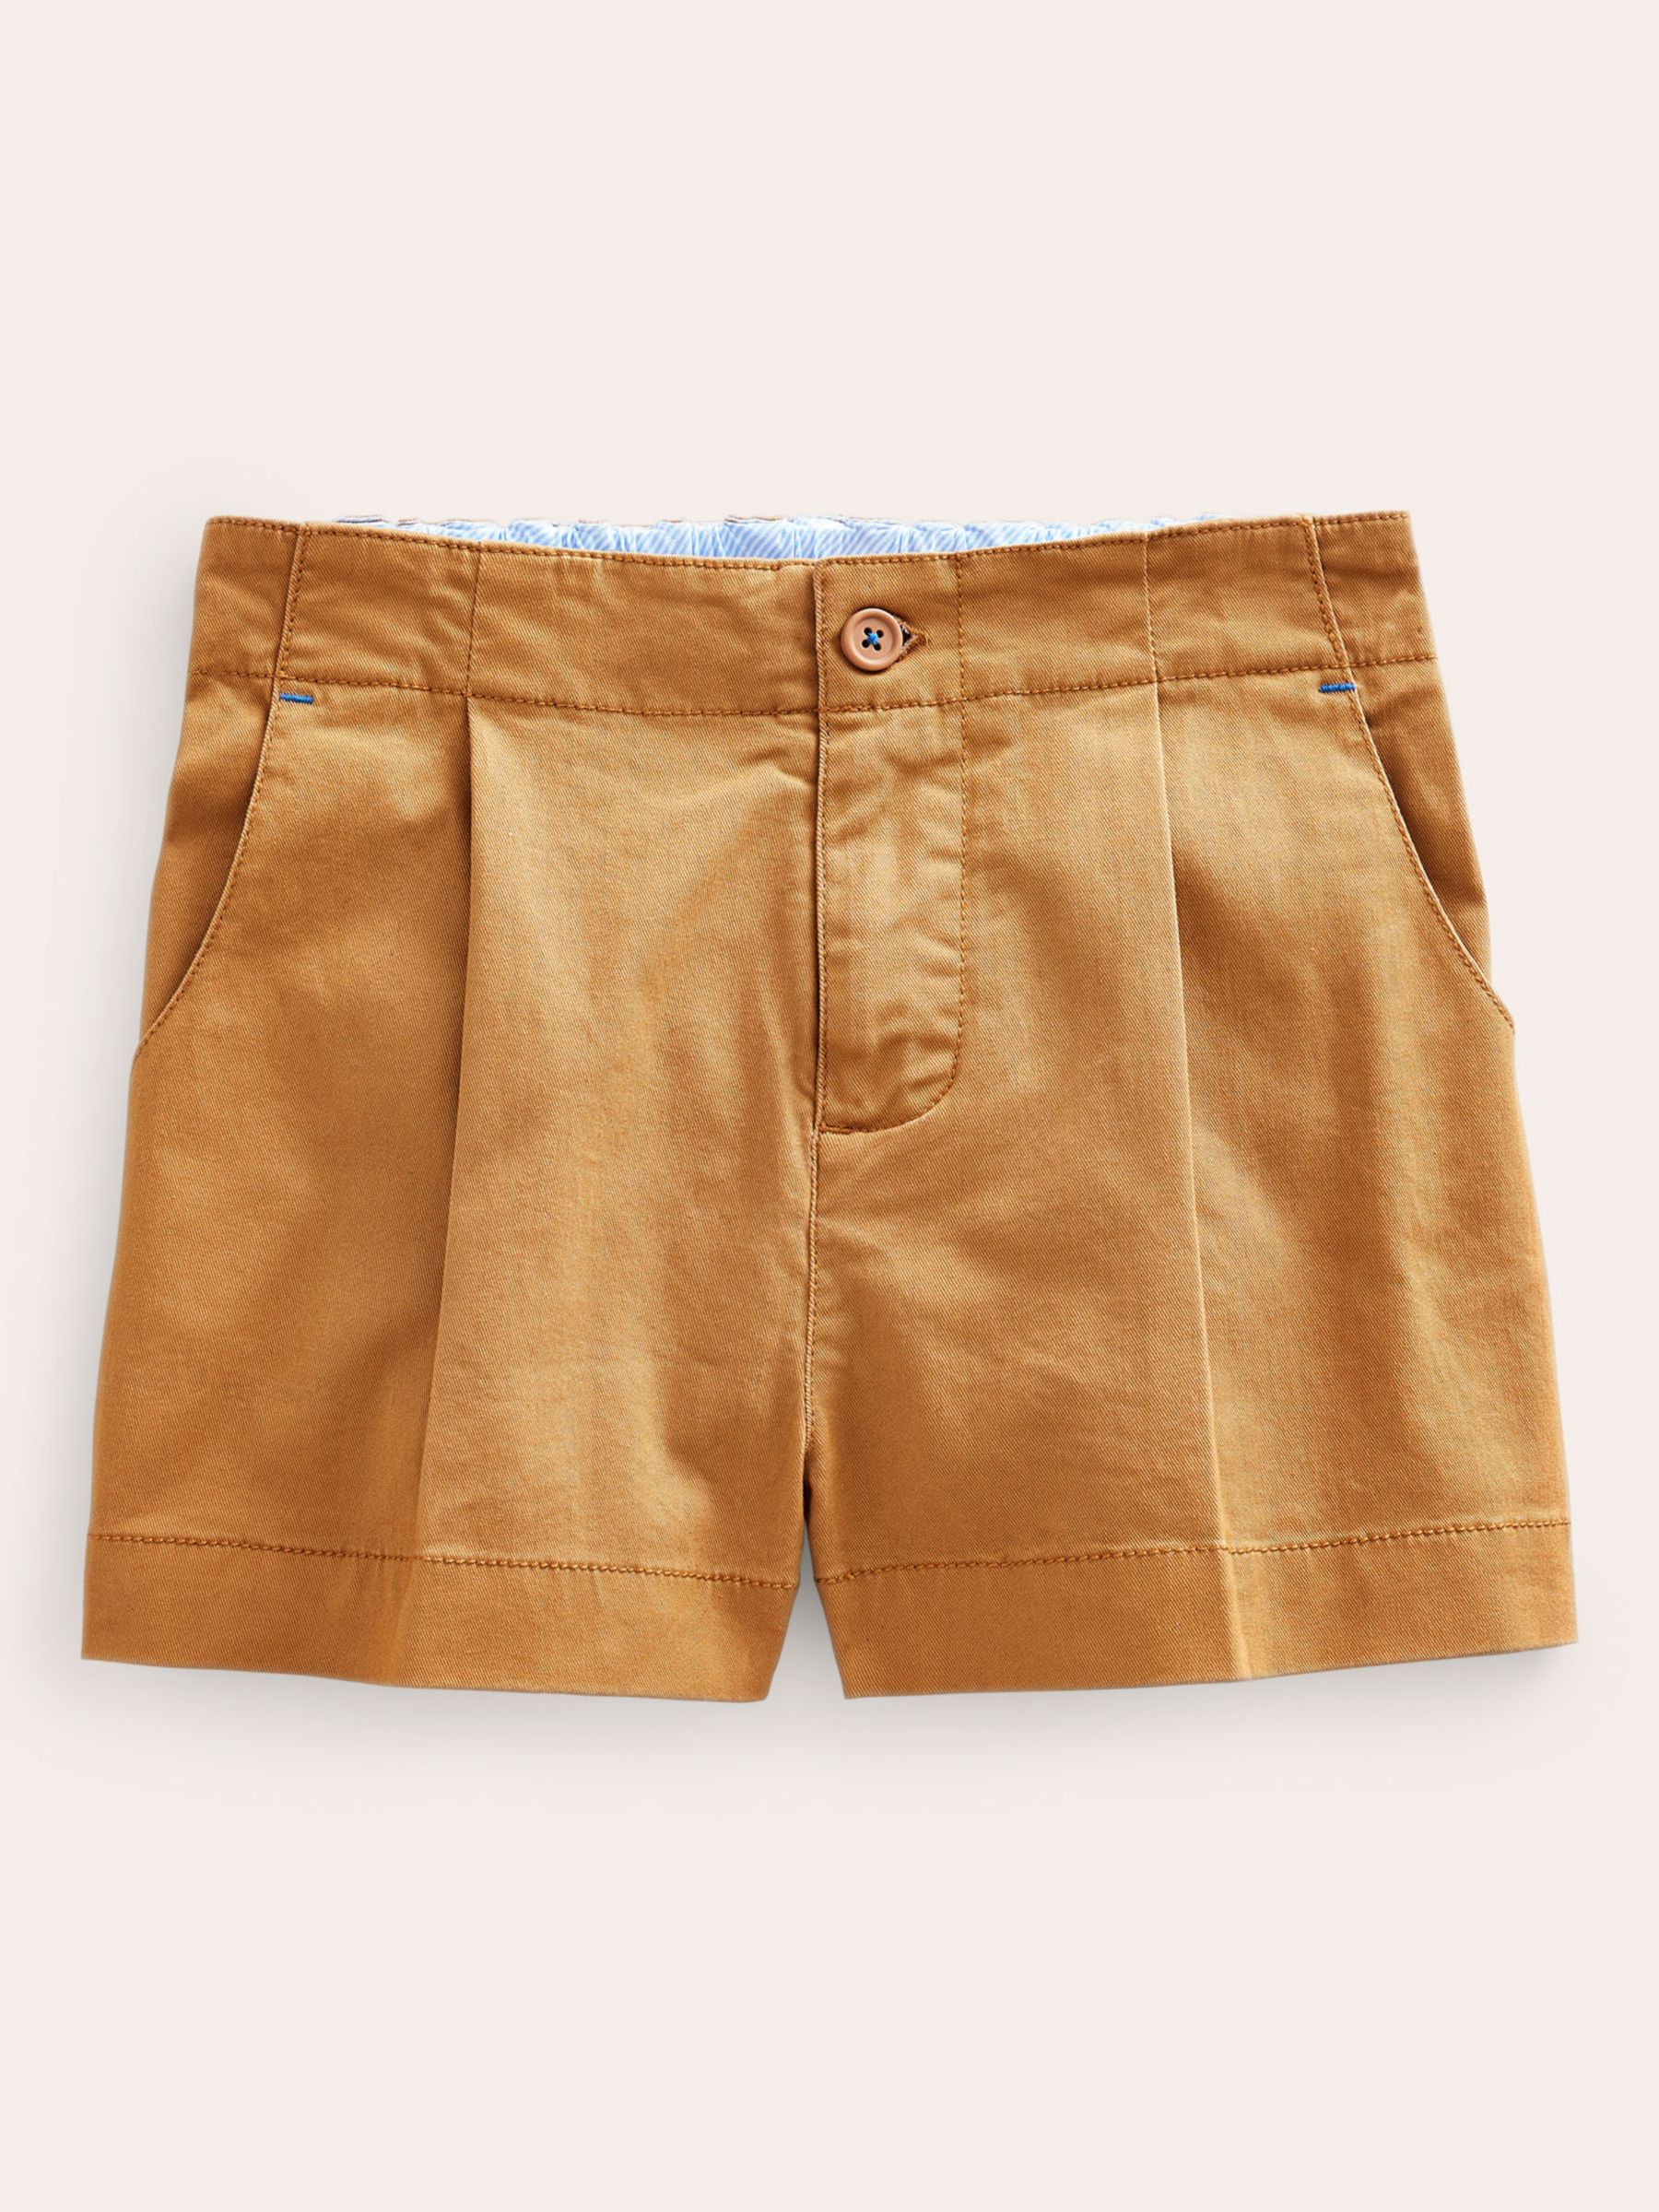 Mini Boden Kid's Chino Shorts, Sand